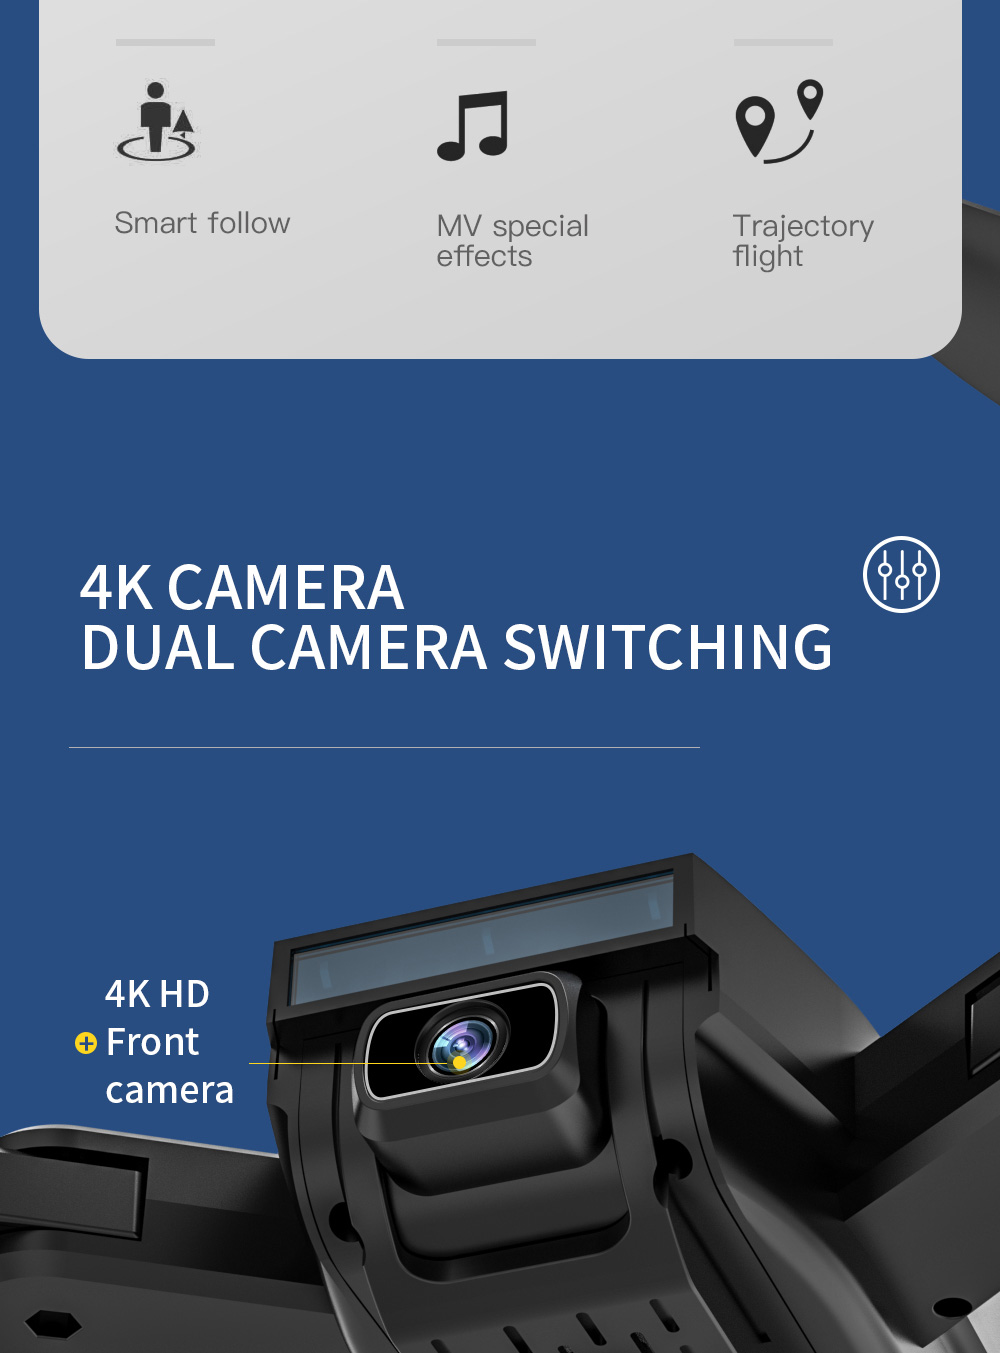 ZLL SG700 MAX 4K Dual Kamera GPS 5G WIFI FPV Kamera Optische Flusspositionierung Brushless RC Drohne - Zwei Batterien mit Tasche -